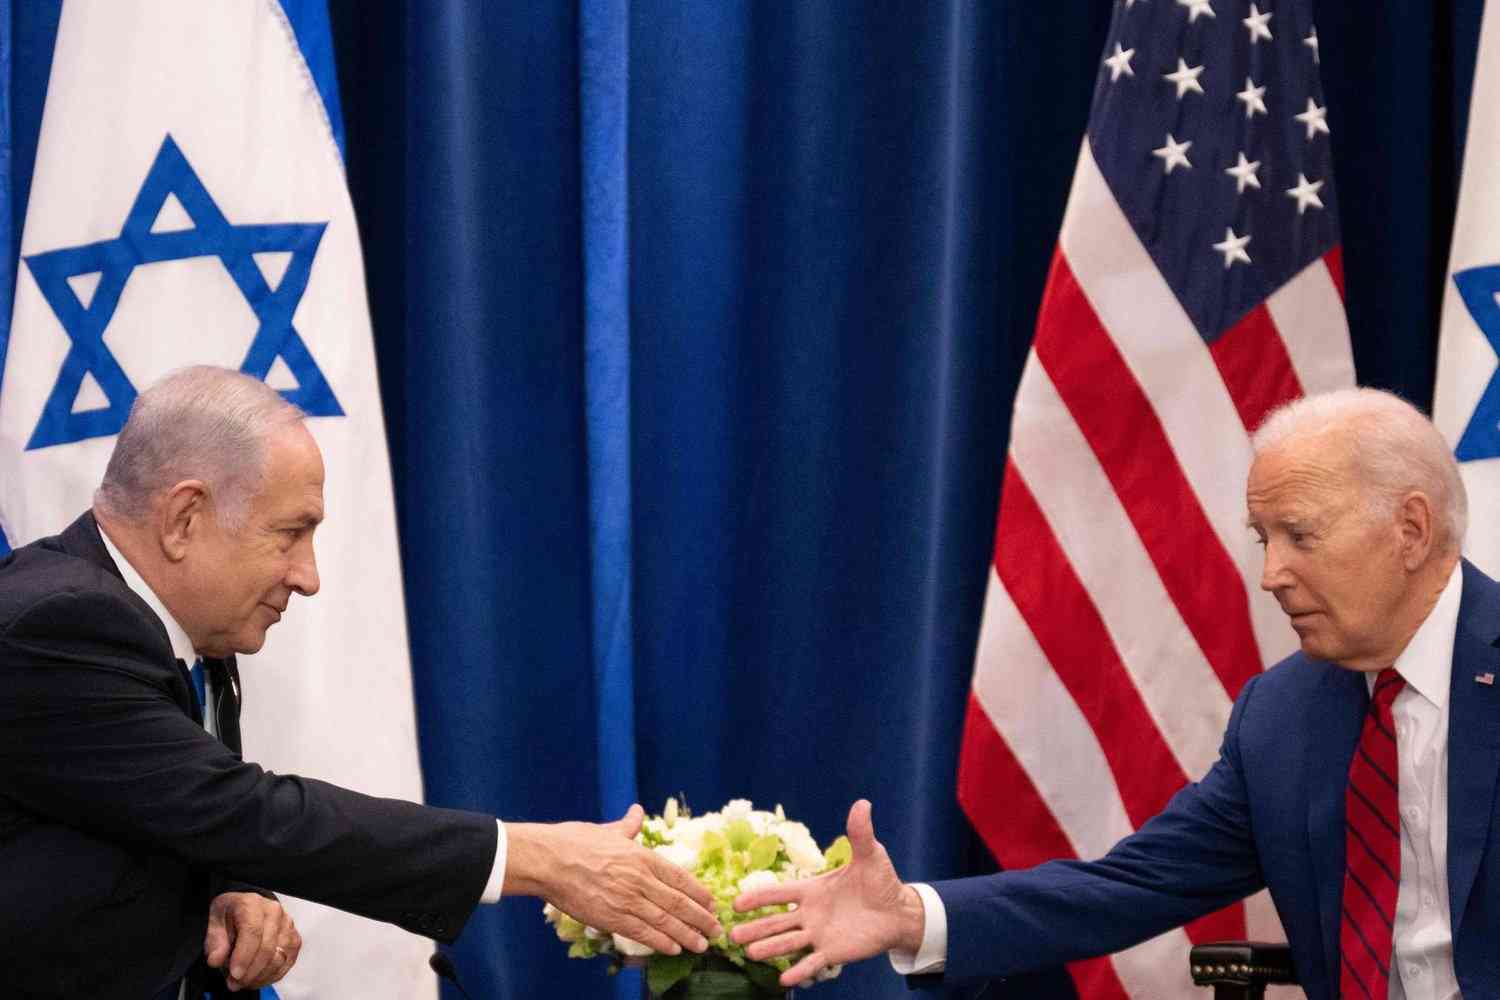 نتنياهو يرد على تصريحات بايدن بفقدان الدعم الدولي لإسرائيل